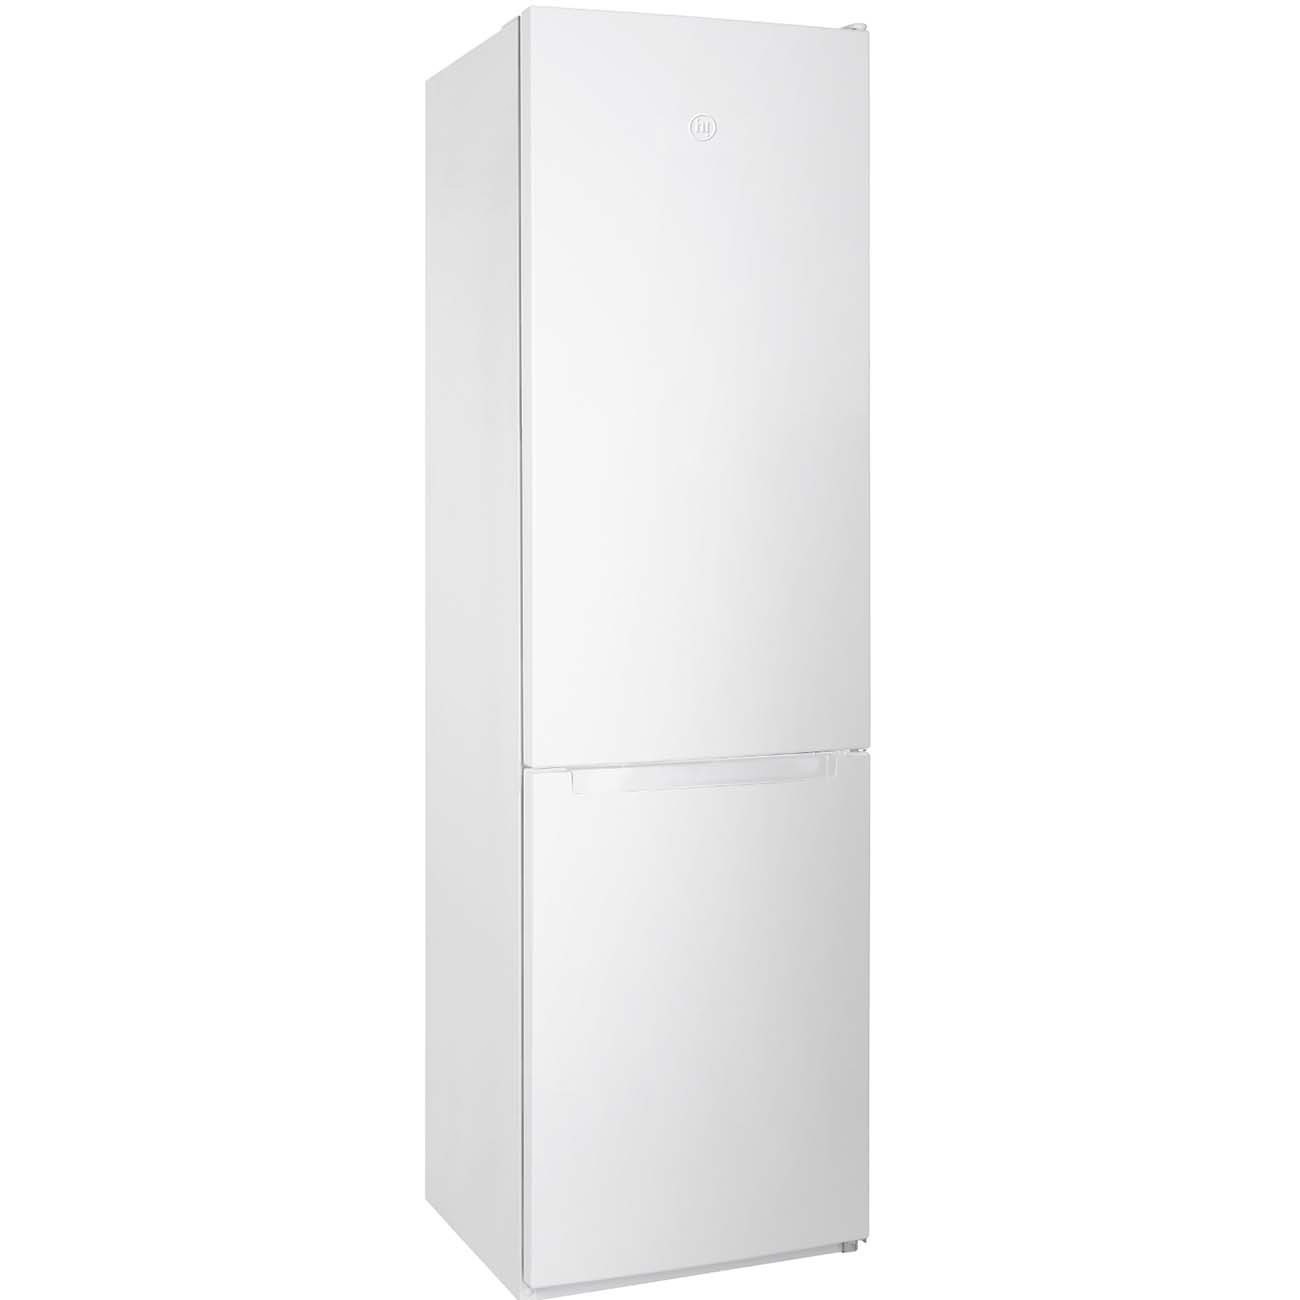 Холодильник Hi HFDN020357DW белый, купить в Москве, цены в интернет-магазинах на Мегамаркет